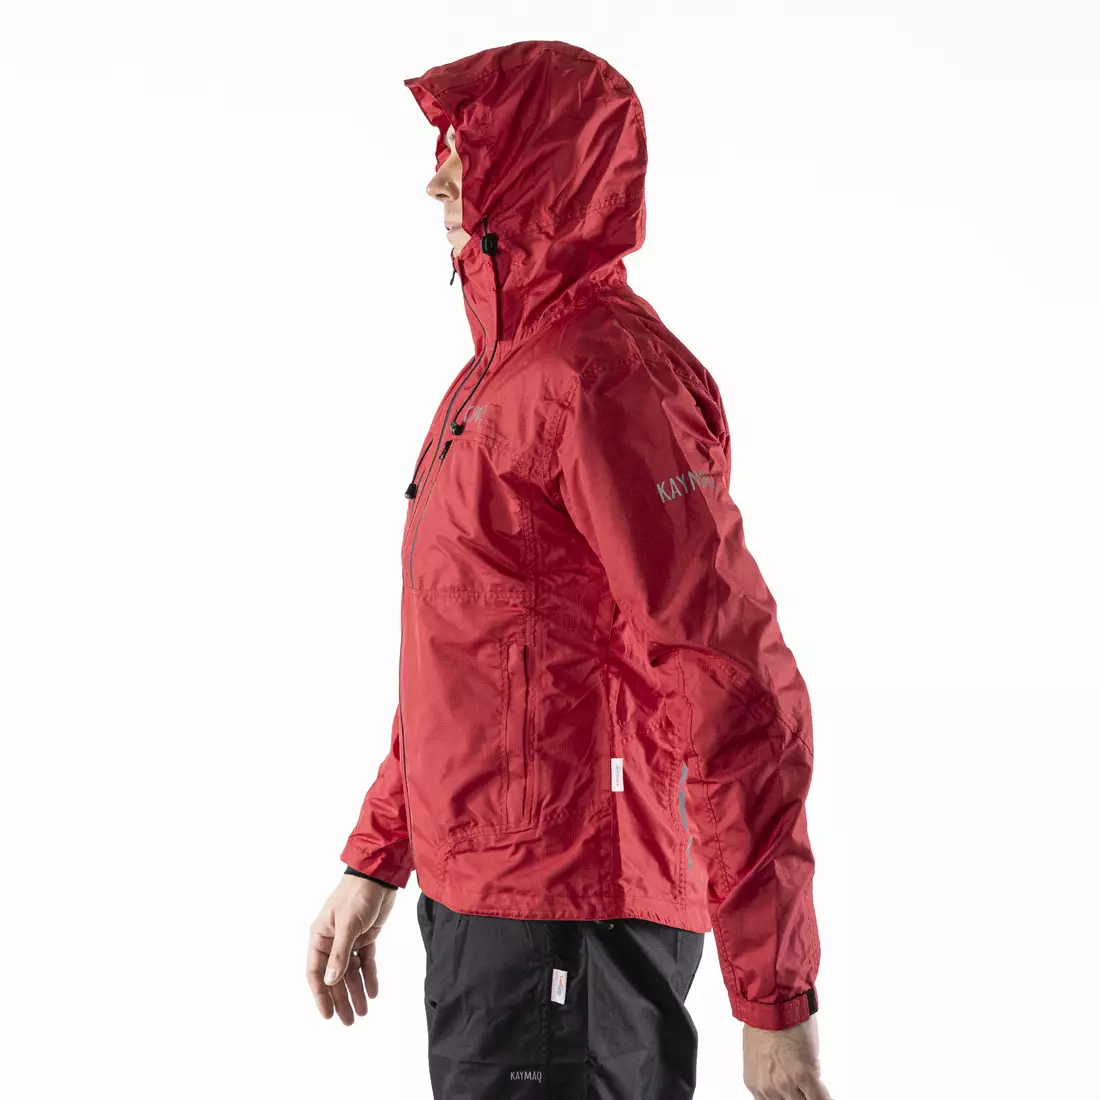 KAYMAQ J2MH men's hooded rain cycling jacket, red